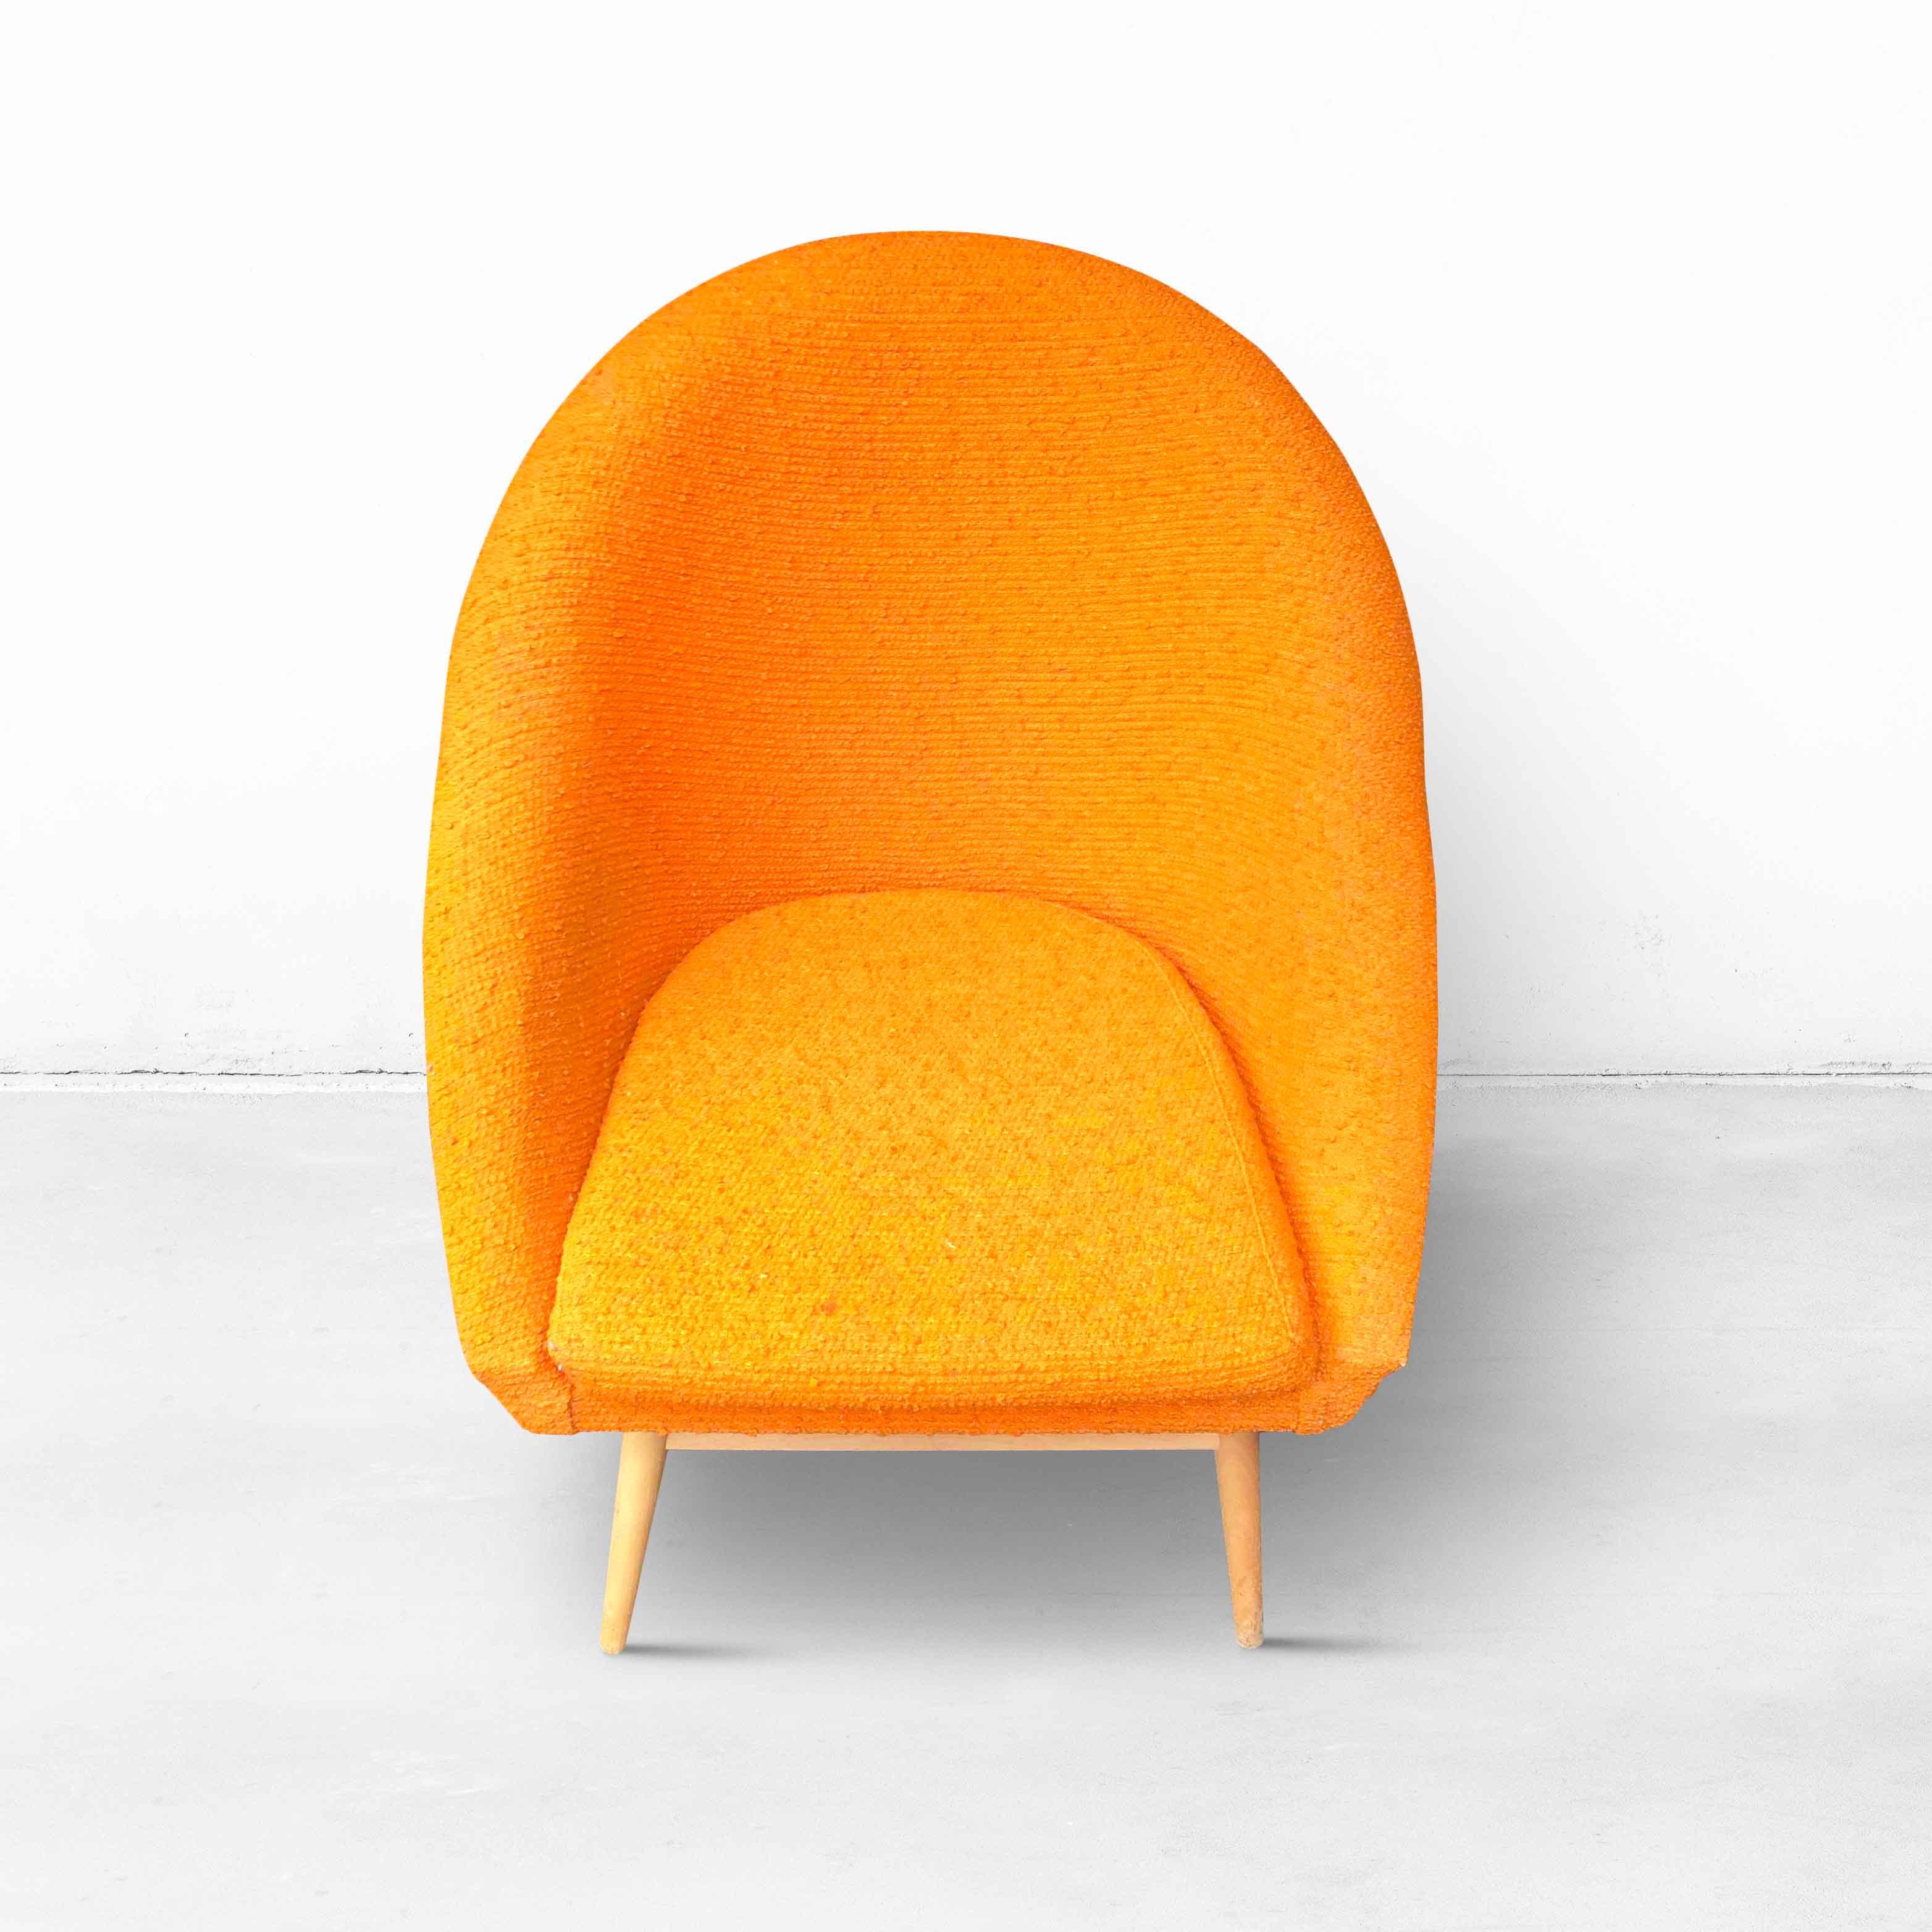 Träumen Sie in diesen orangefarbenen Schalensitzen aus den 1960er Jahren. Der Stoff weist keine Flecken oder Beschädigungen auf und der Sitzkomfort ist immer noch sehr gut. Die Holzbeine weisen einige Abnutzungserscheinungen auf, sind aber immer